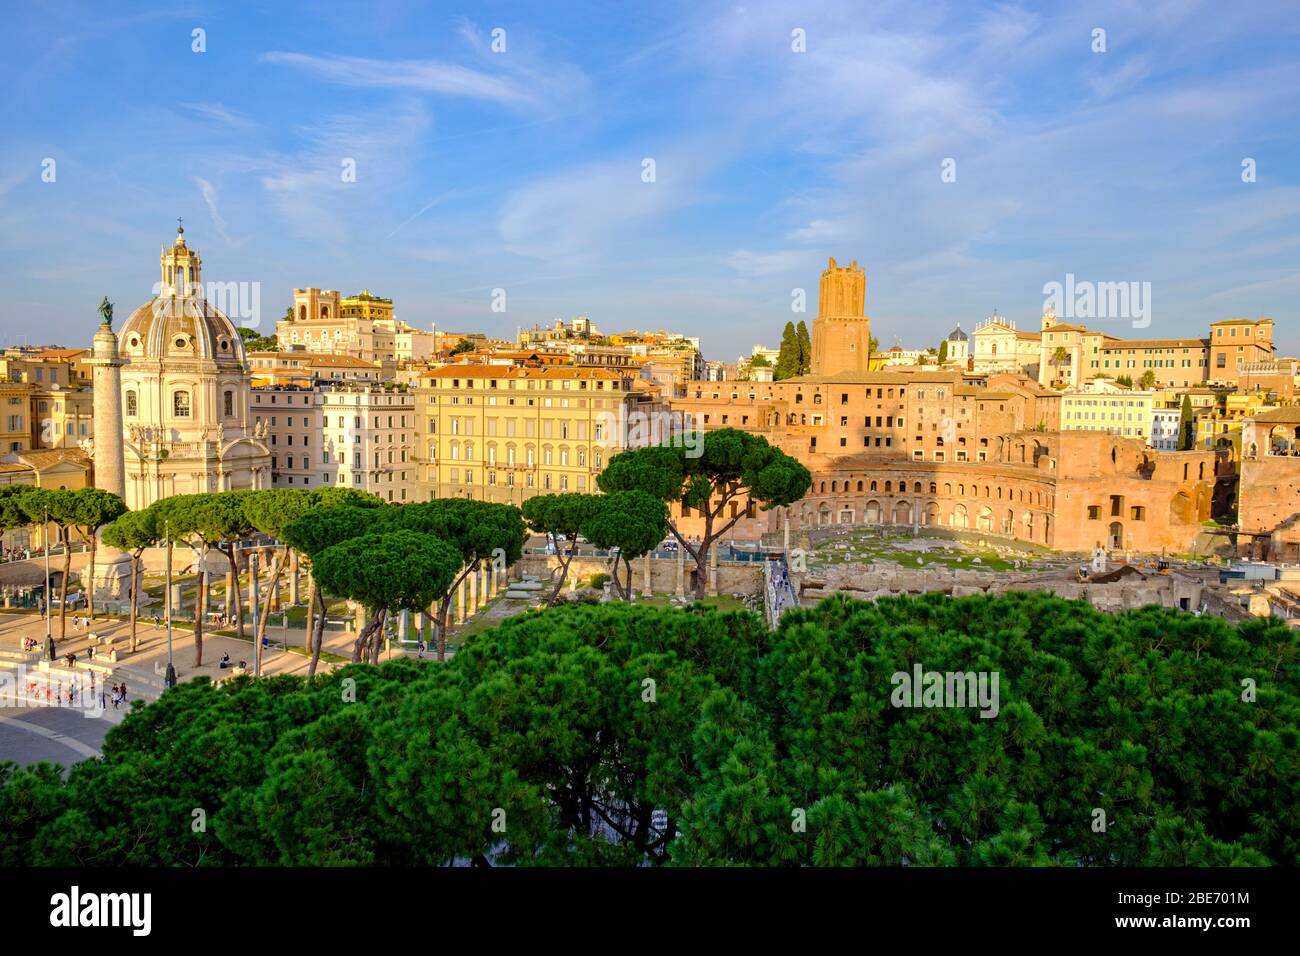 Gli edifici dell'antica Roma, la vista del paesaggio urbano dell'ora d'oro, il panorama di via dei fori Imperiali, il foro di Traiano, la colonna di Traiano, Roma, Italia. Foto Stock